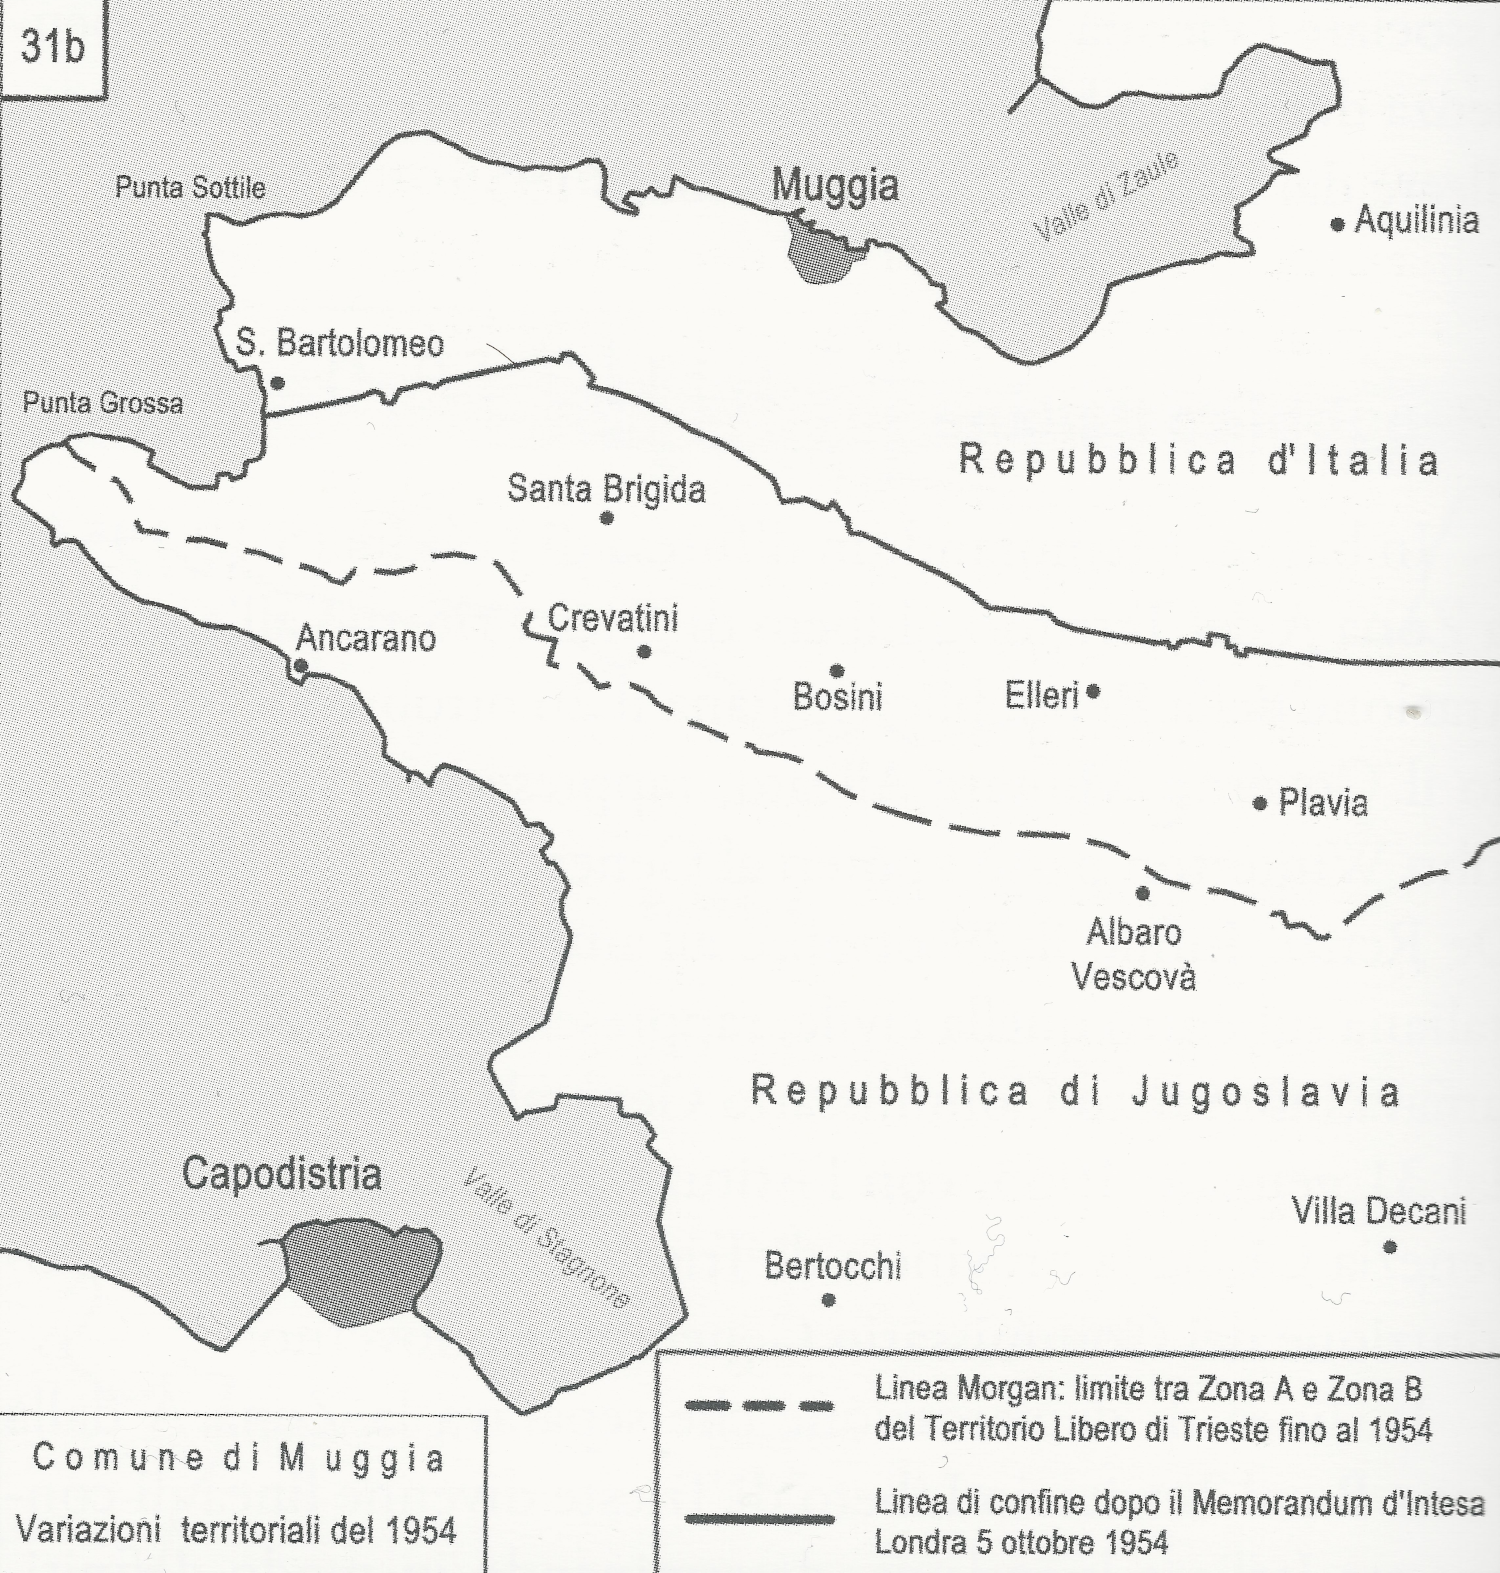 Memorandum d'Intesa 1954 - Rettifiche del confine nell'area di Muggia (Franco Cecotti, "Il tempo dei confini", IRSML, cartina 32, pag. 142)